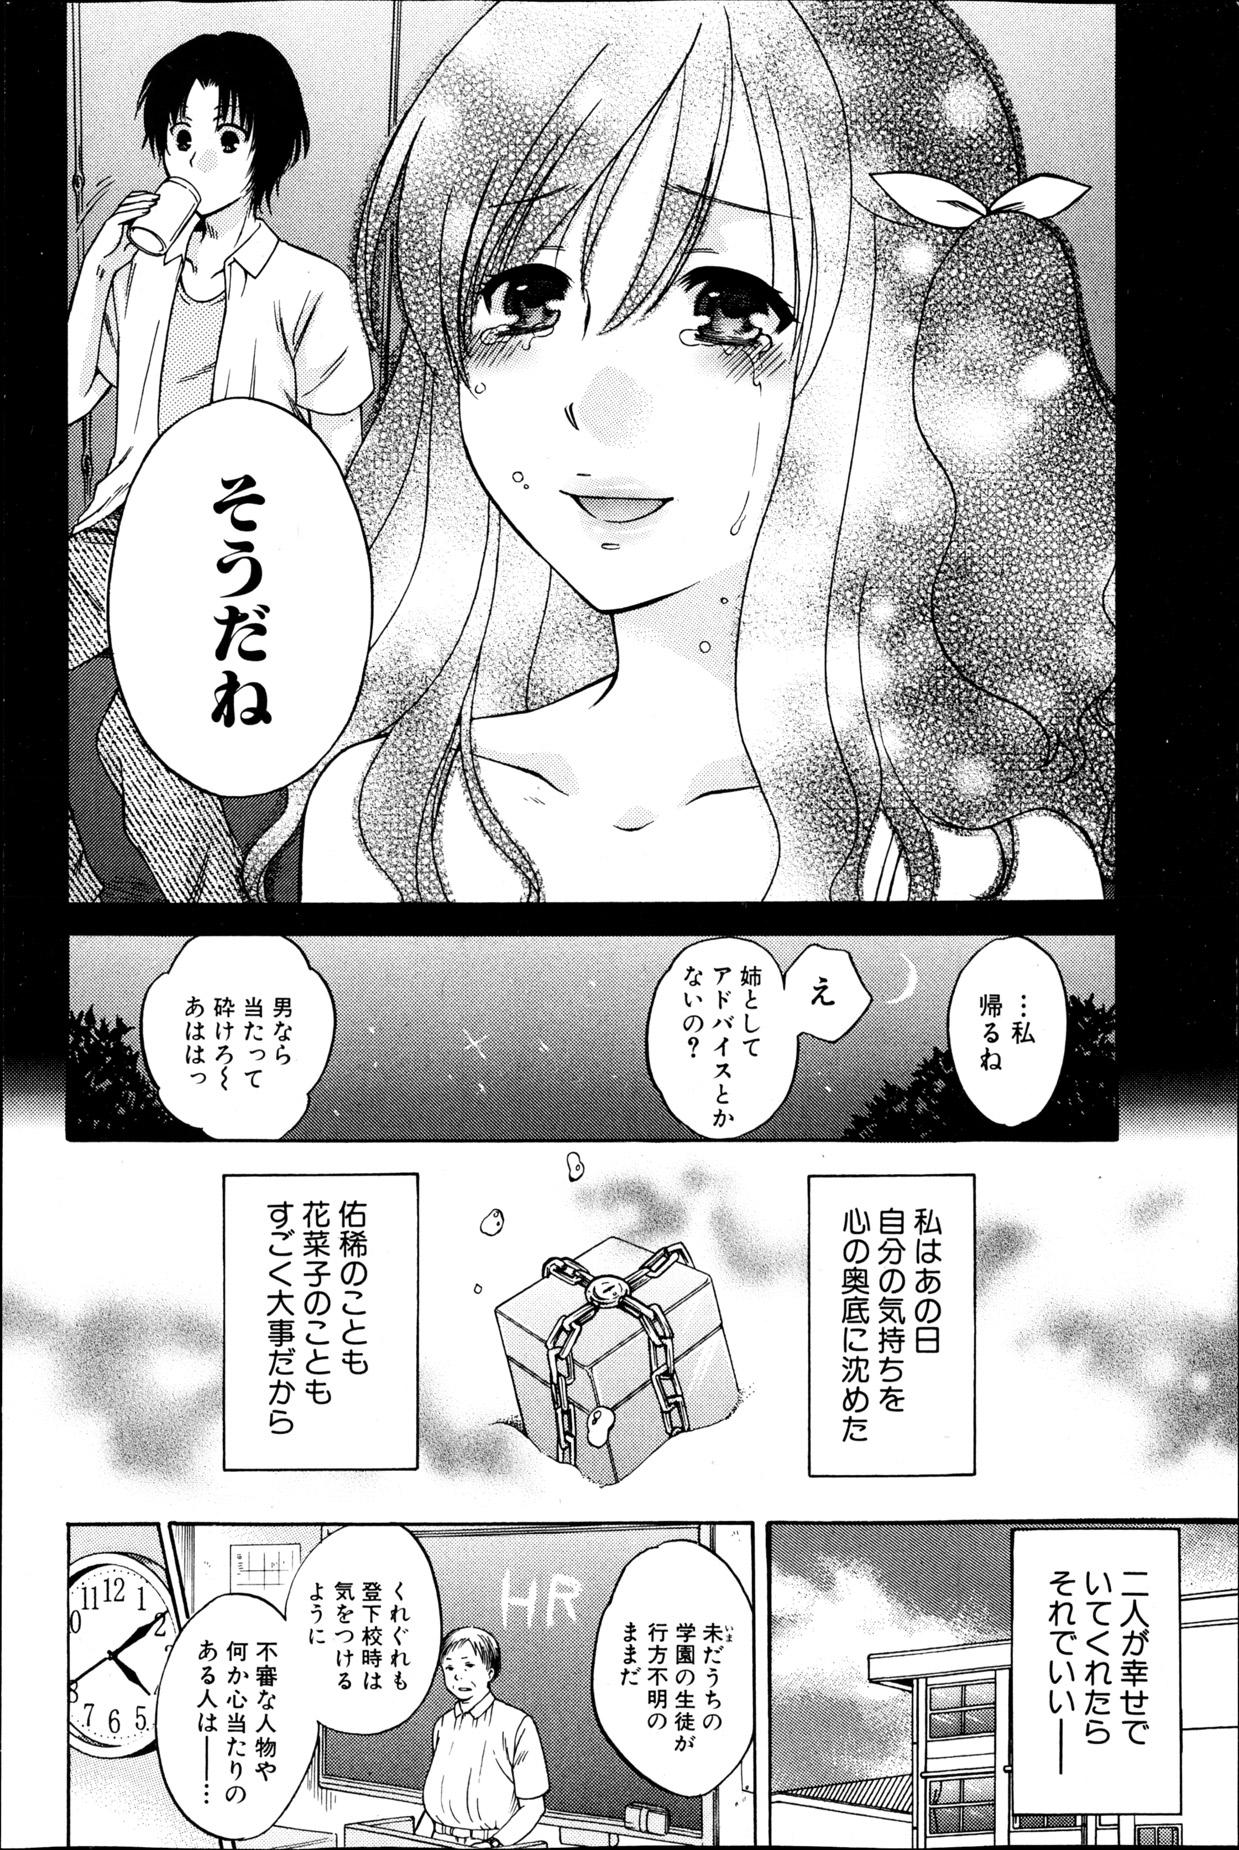 Whore Yoru ga Akenai. 19yo - Page 6